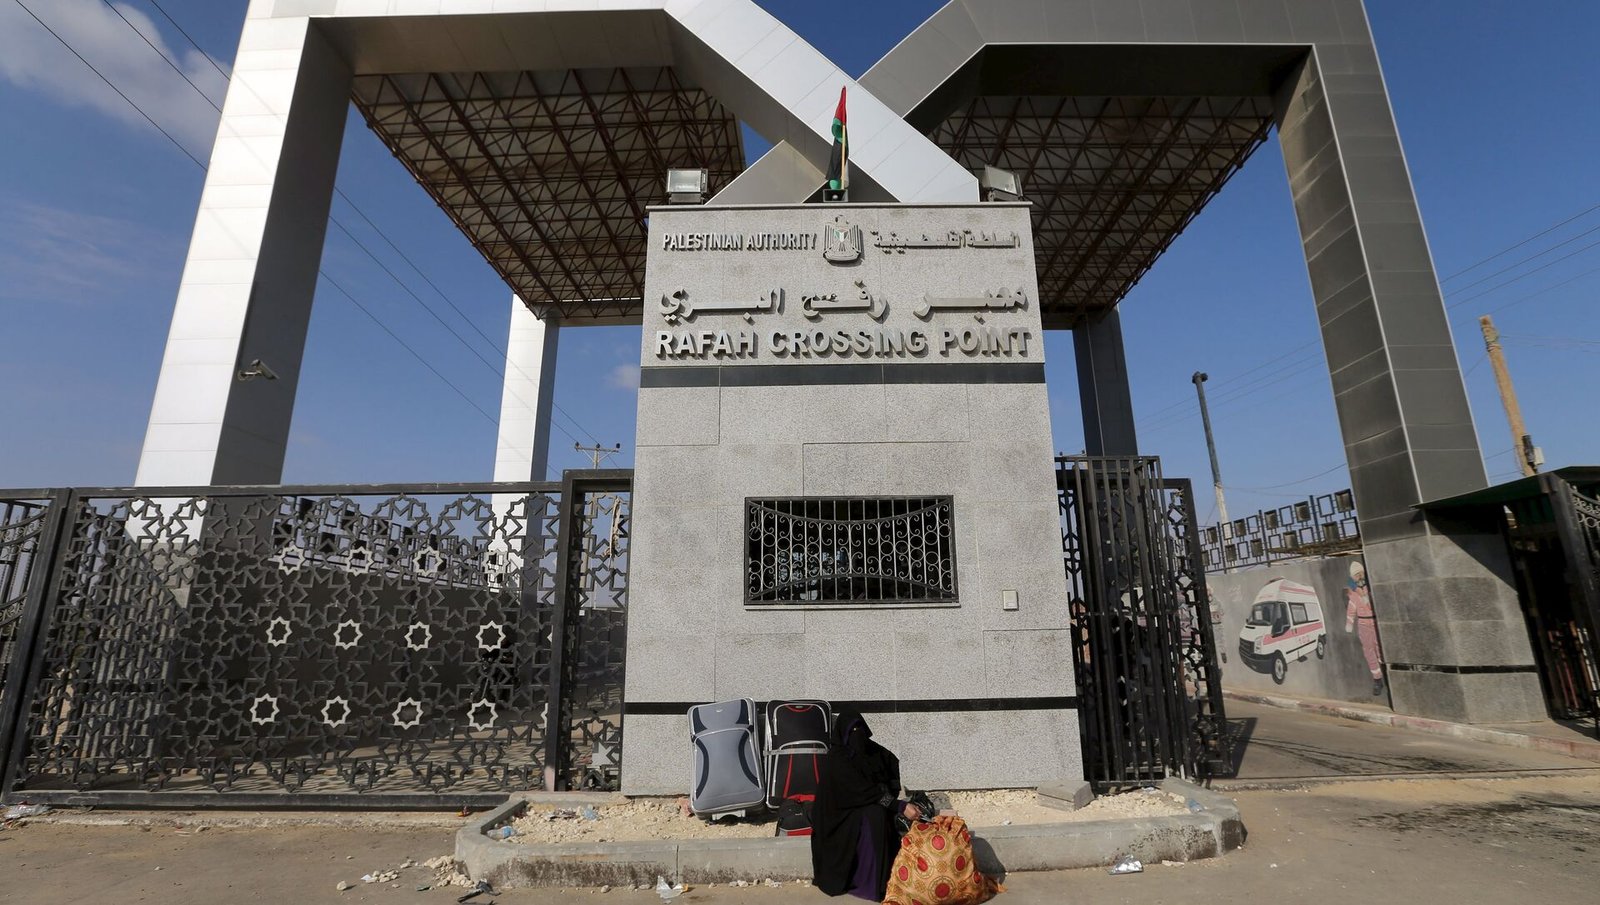 El paso de Rafah está cerrado temporalmente por circunstancias de seguridad, alerta Estados Unidos